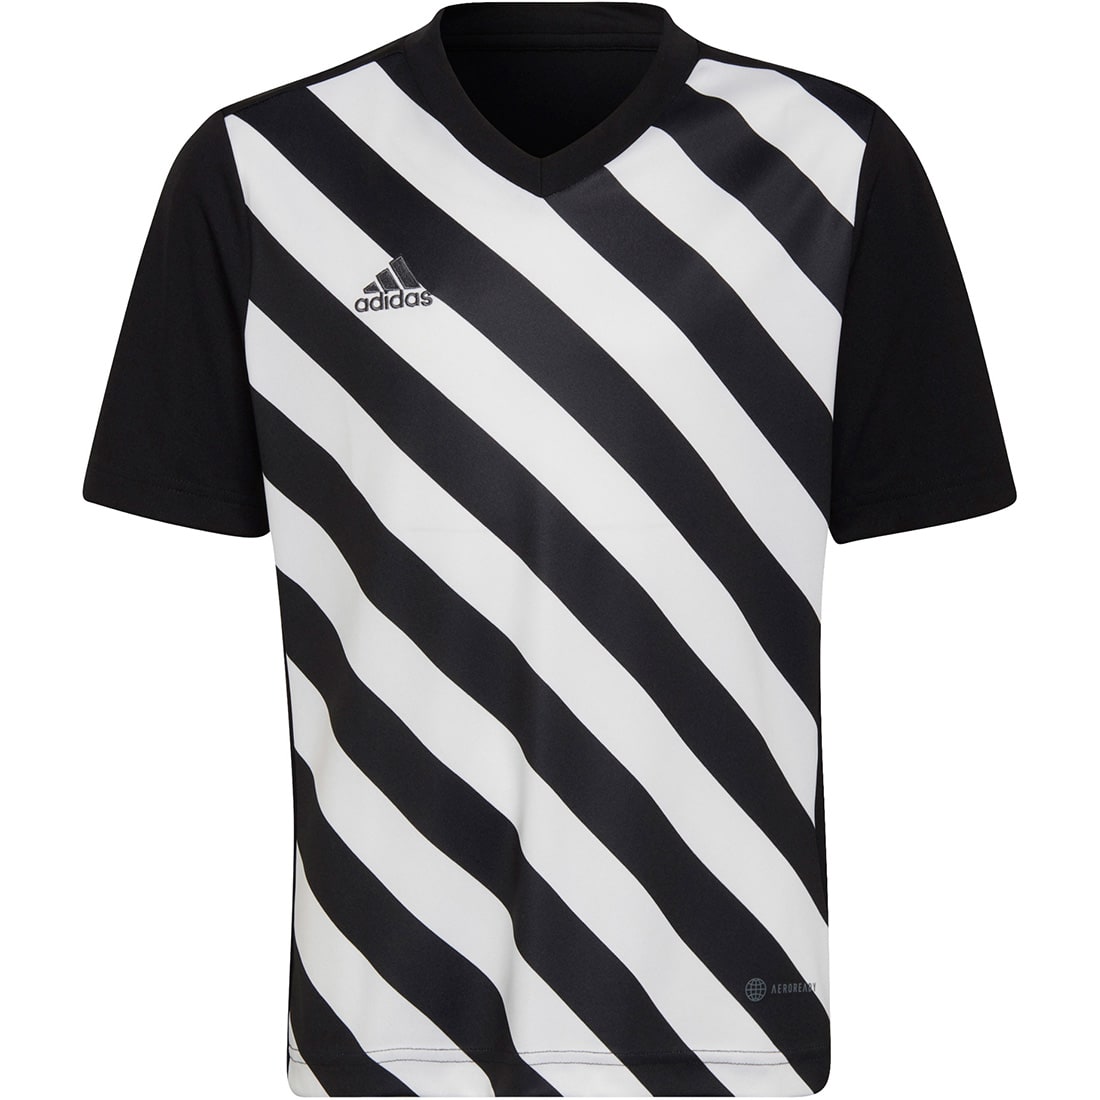 Trikot online Adidas kaufen 22 GFX Entrada Kinder schwarz-weiß